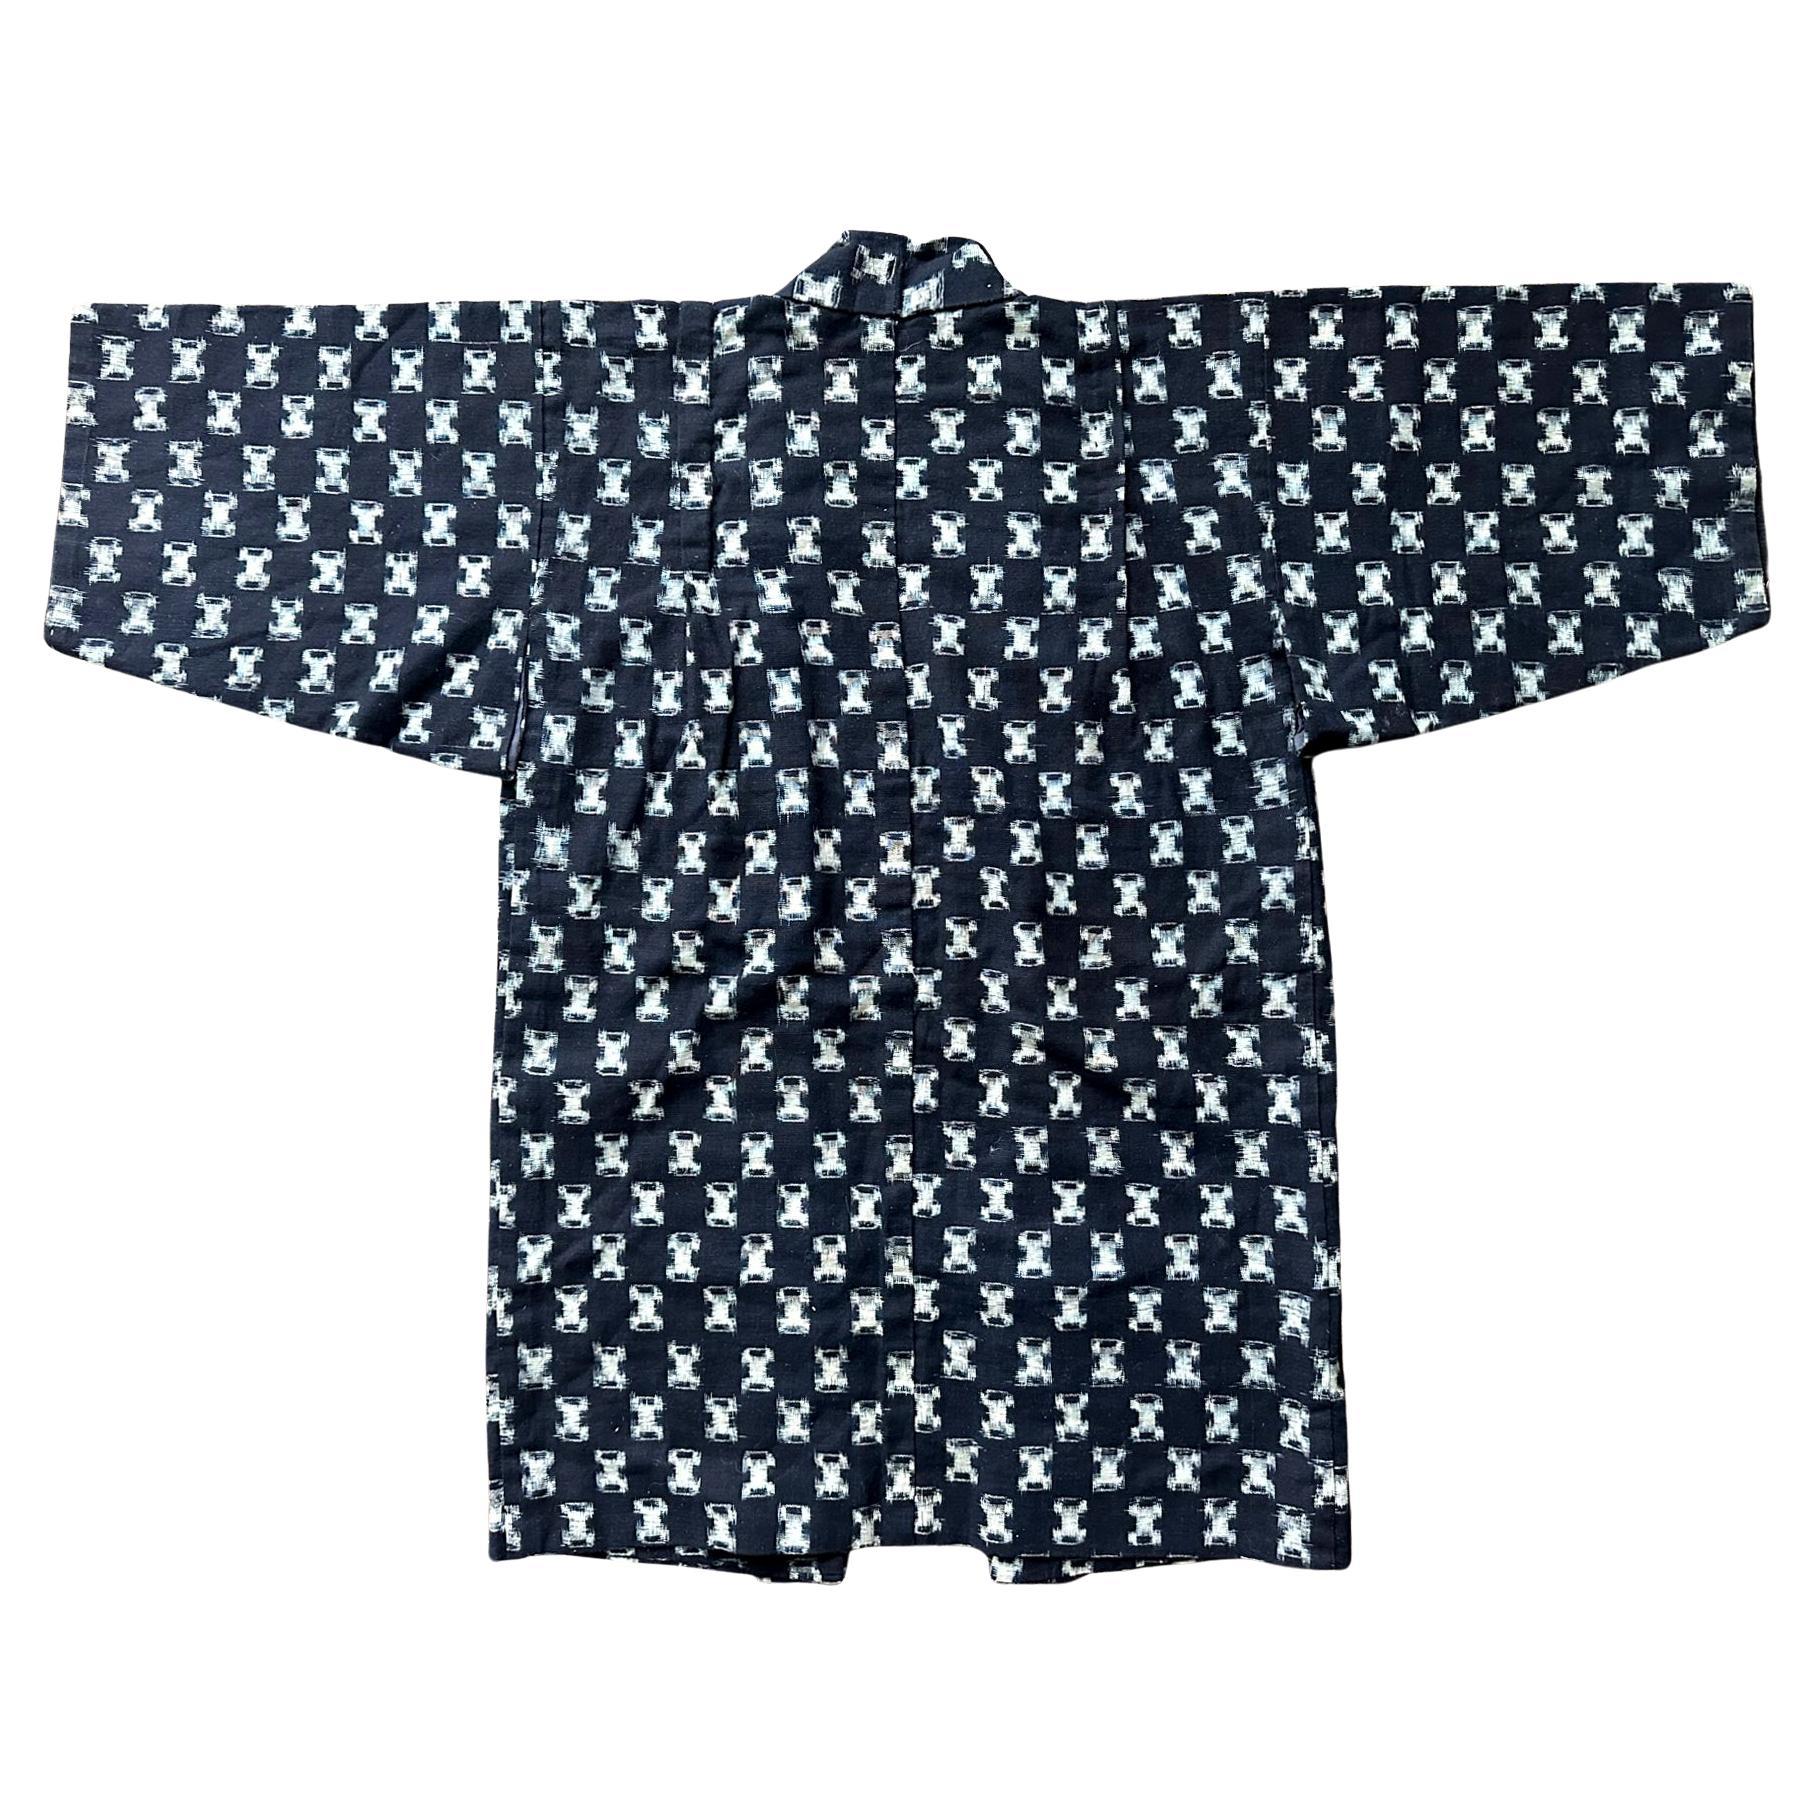 Un kimono d'enfant japonais tissé, rare et bien conservé, datant du début du 20e siècle (fin de la période Meiji). Le petit kimono était un excellent exemple de Nemaki (vêtement de nuit) pour un jeune garçon, reconnaissable à sa taille et à ses